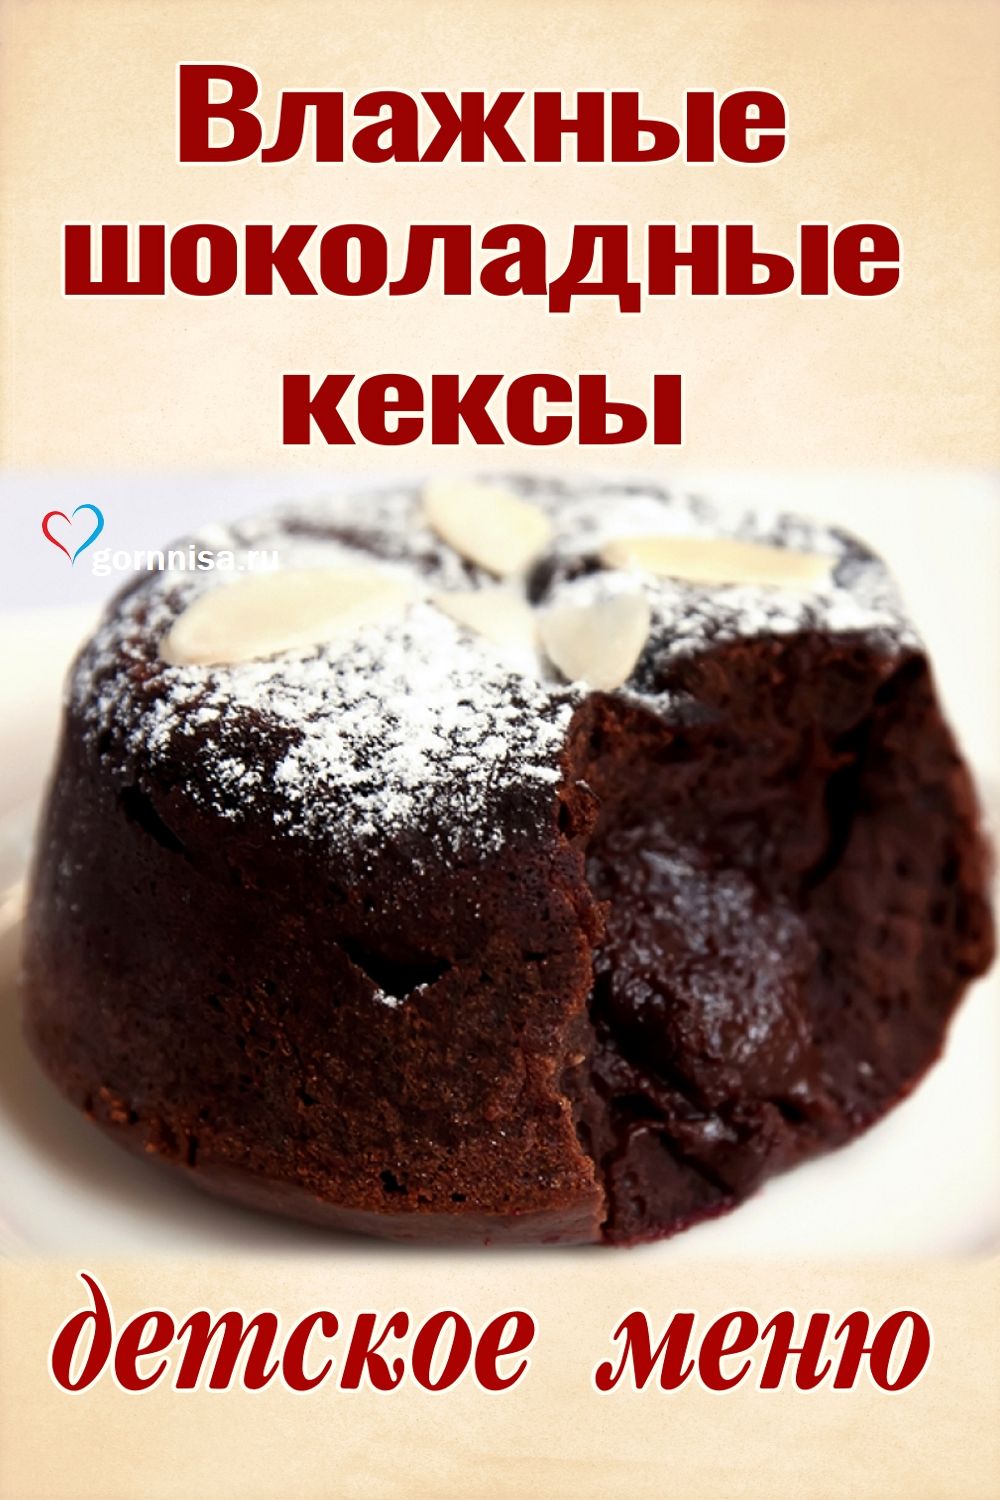 Влажные шоколадные кексы - Детское меню https://gornnisa.ru/